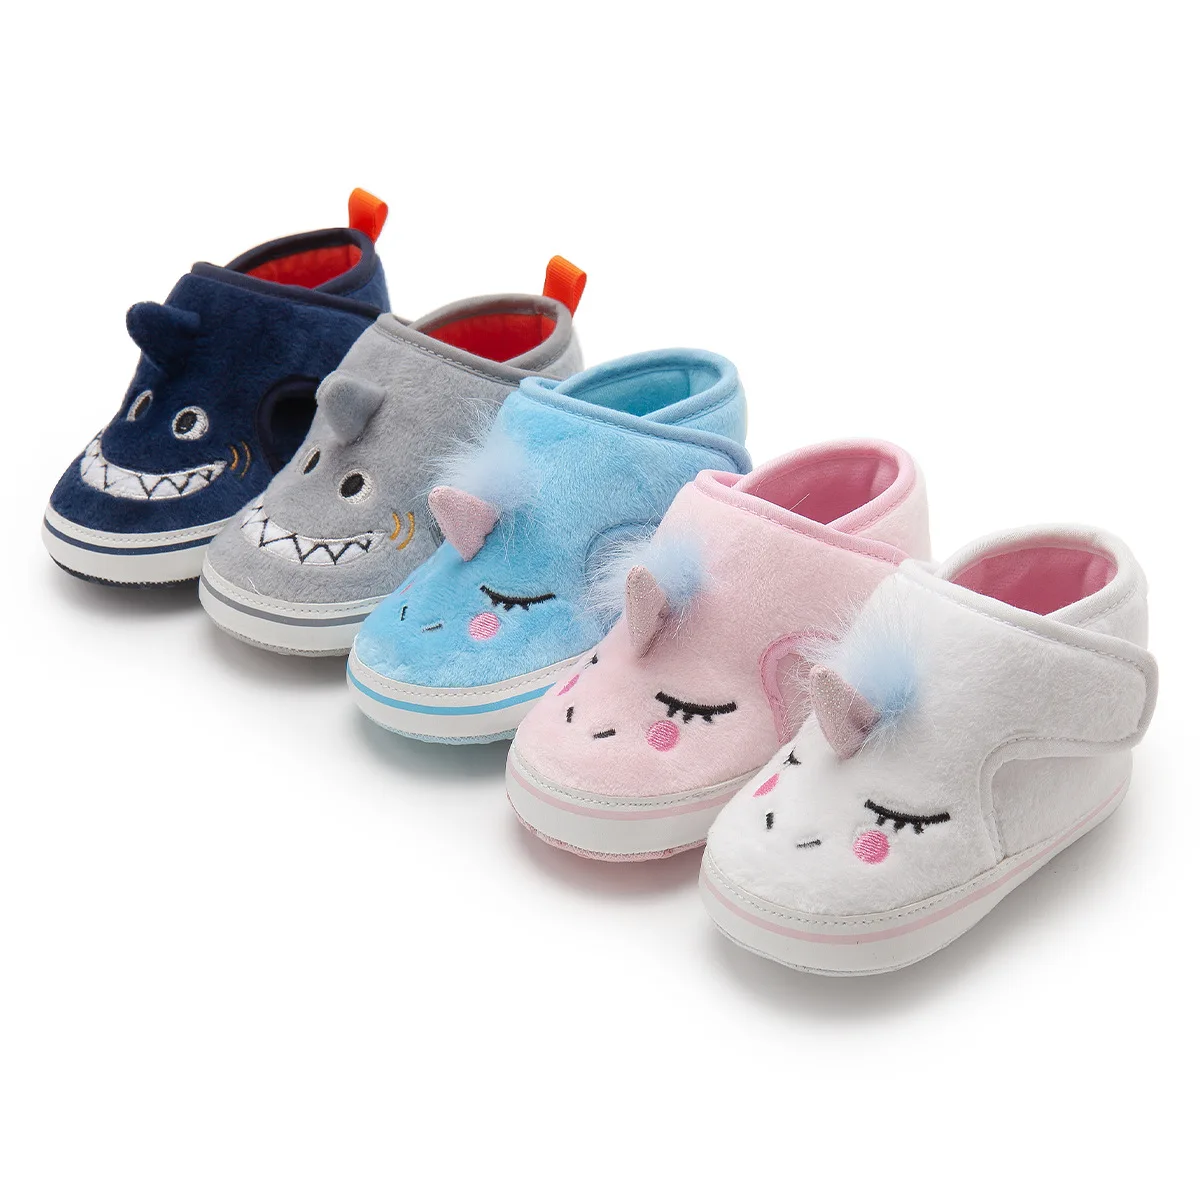 Zapatos Para Bebés Recién Nacidos,Bonitos Animales,Primeros Pasos - Buy Hermosos Zapatos Niña,Zapatos De Bebé,Zapatos De Bebé Recién Nacido Product on Alibaba.com